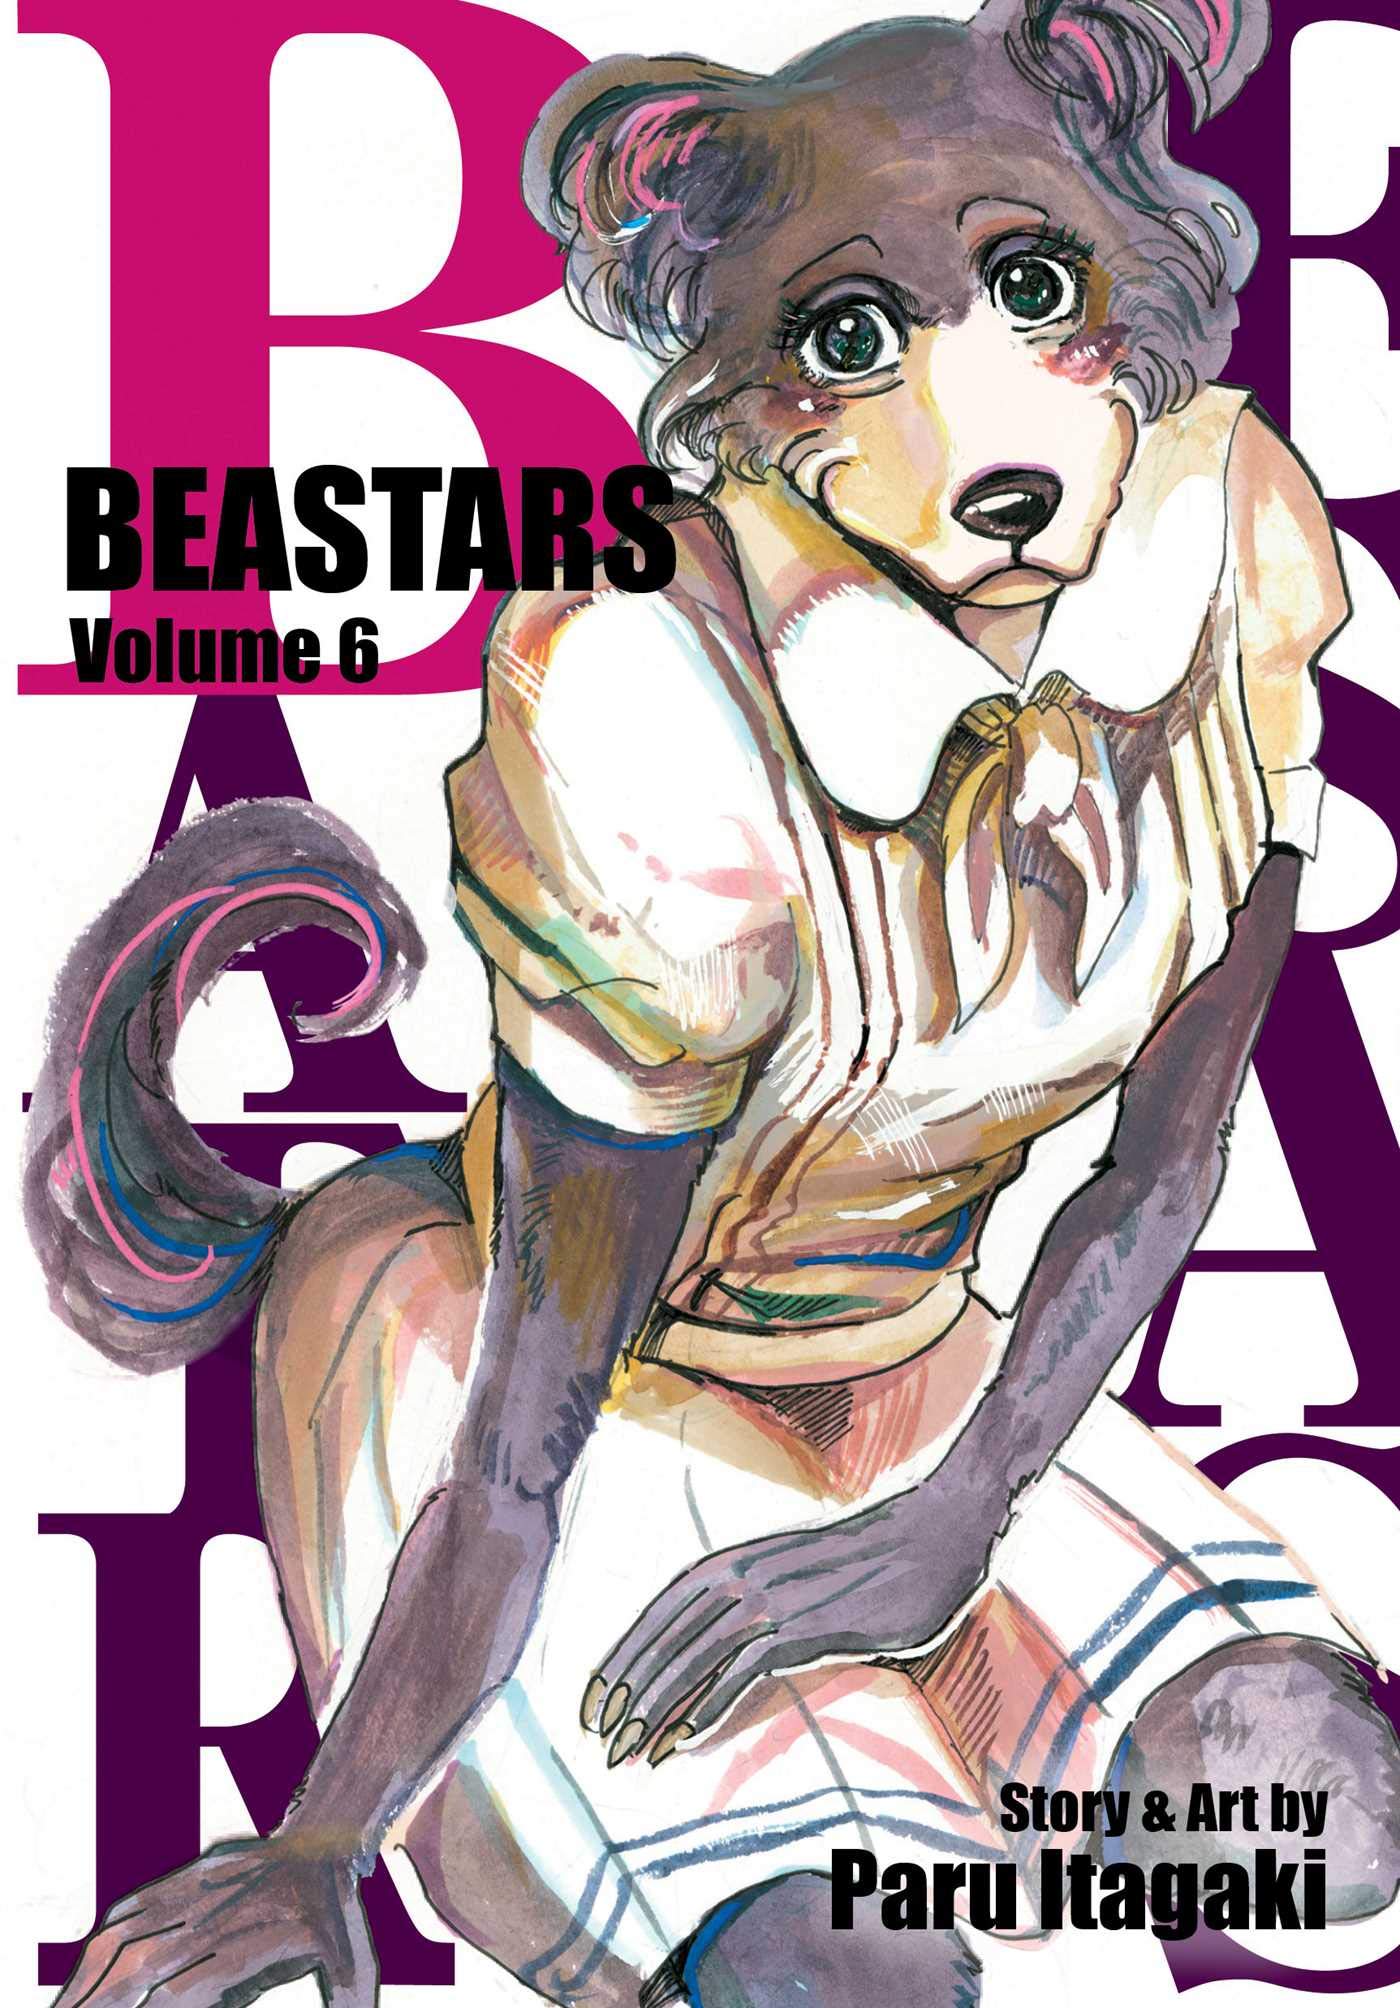 Beastars - Volume 6 | Paru Itagaki image4